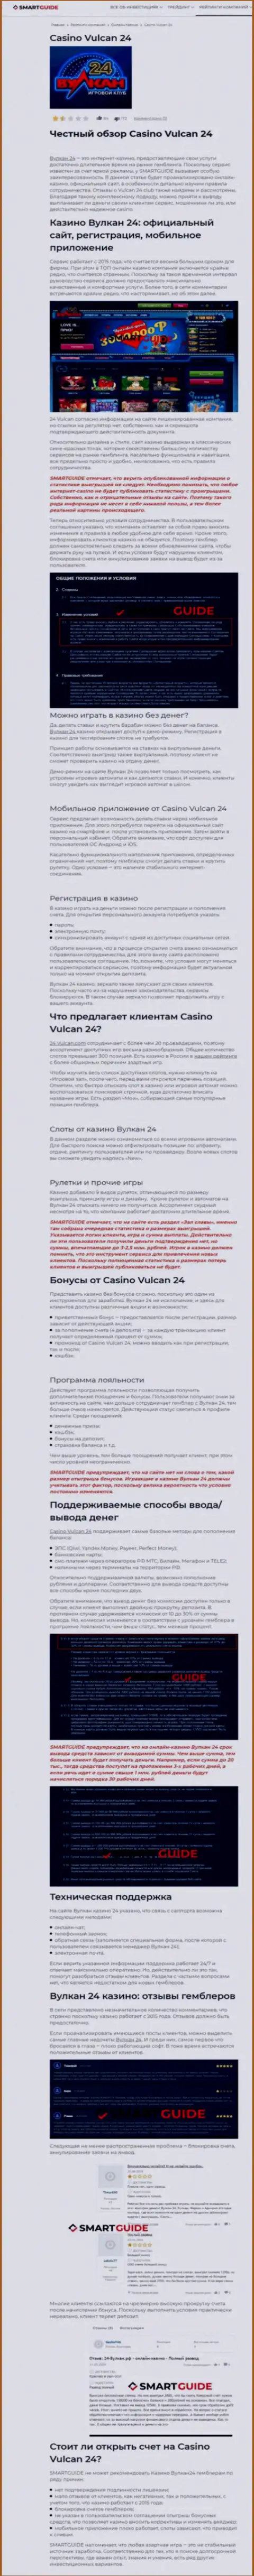 Wulkan24 - это контора, зарабатывающая на воровстве финансовых вложений реальных клиентов (обзор манипуляций)